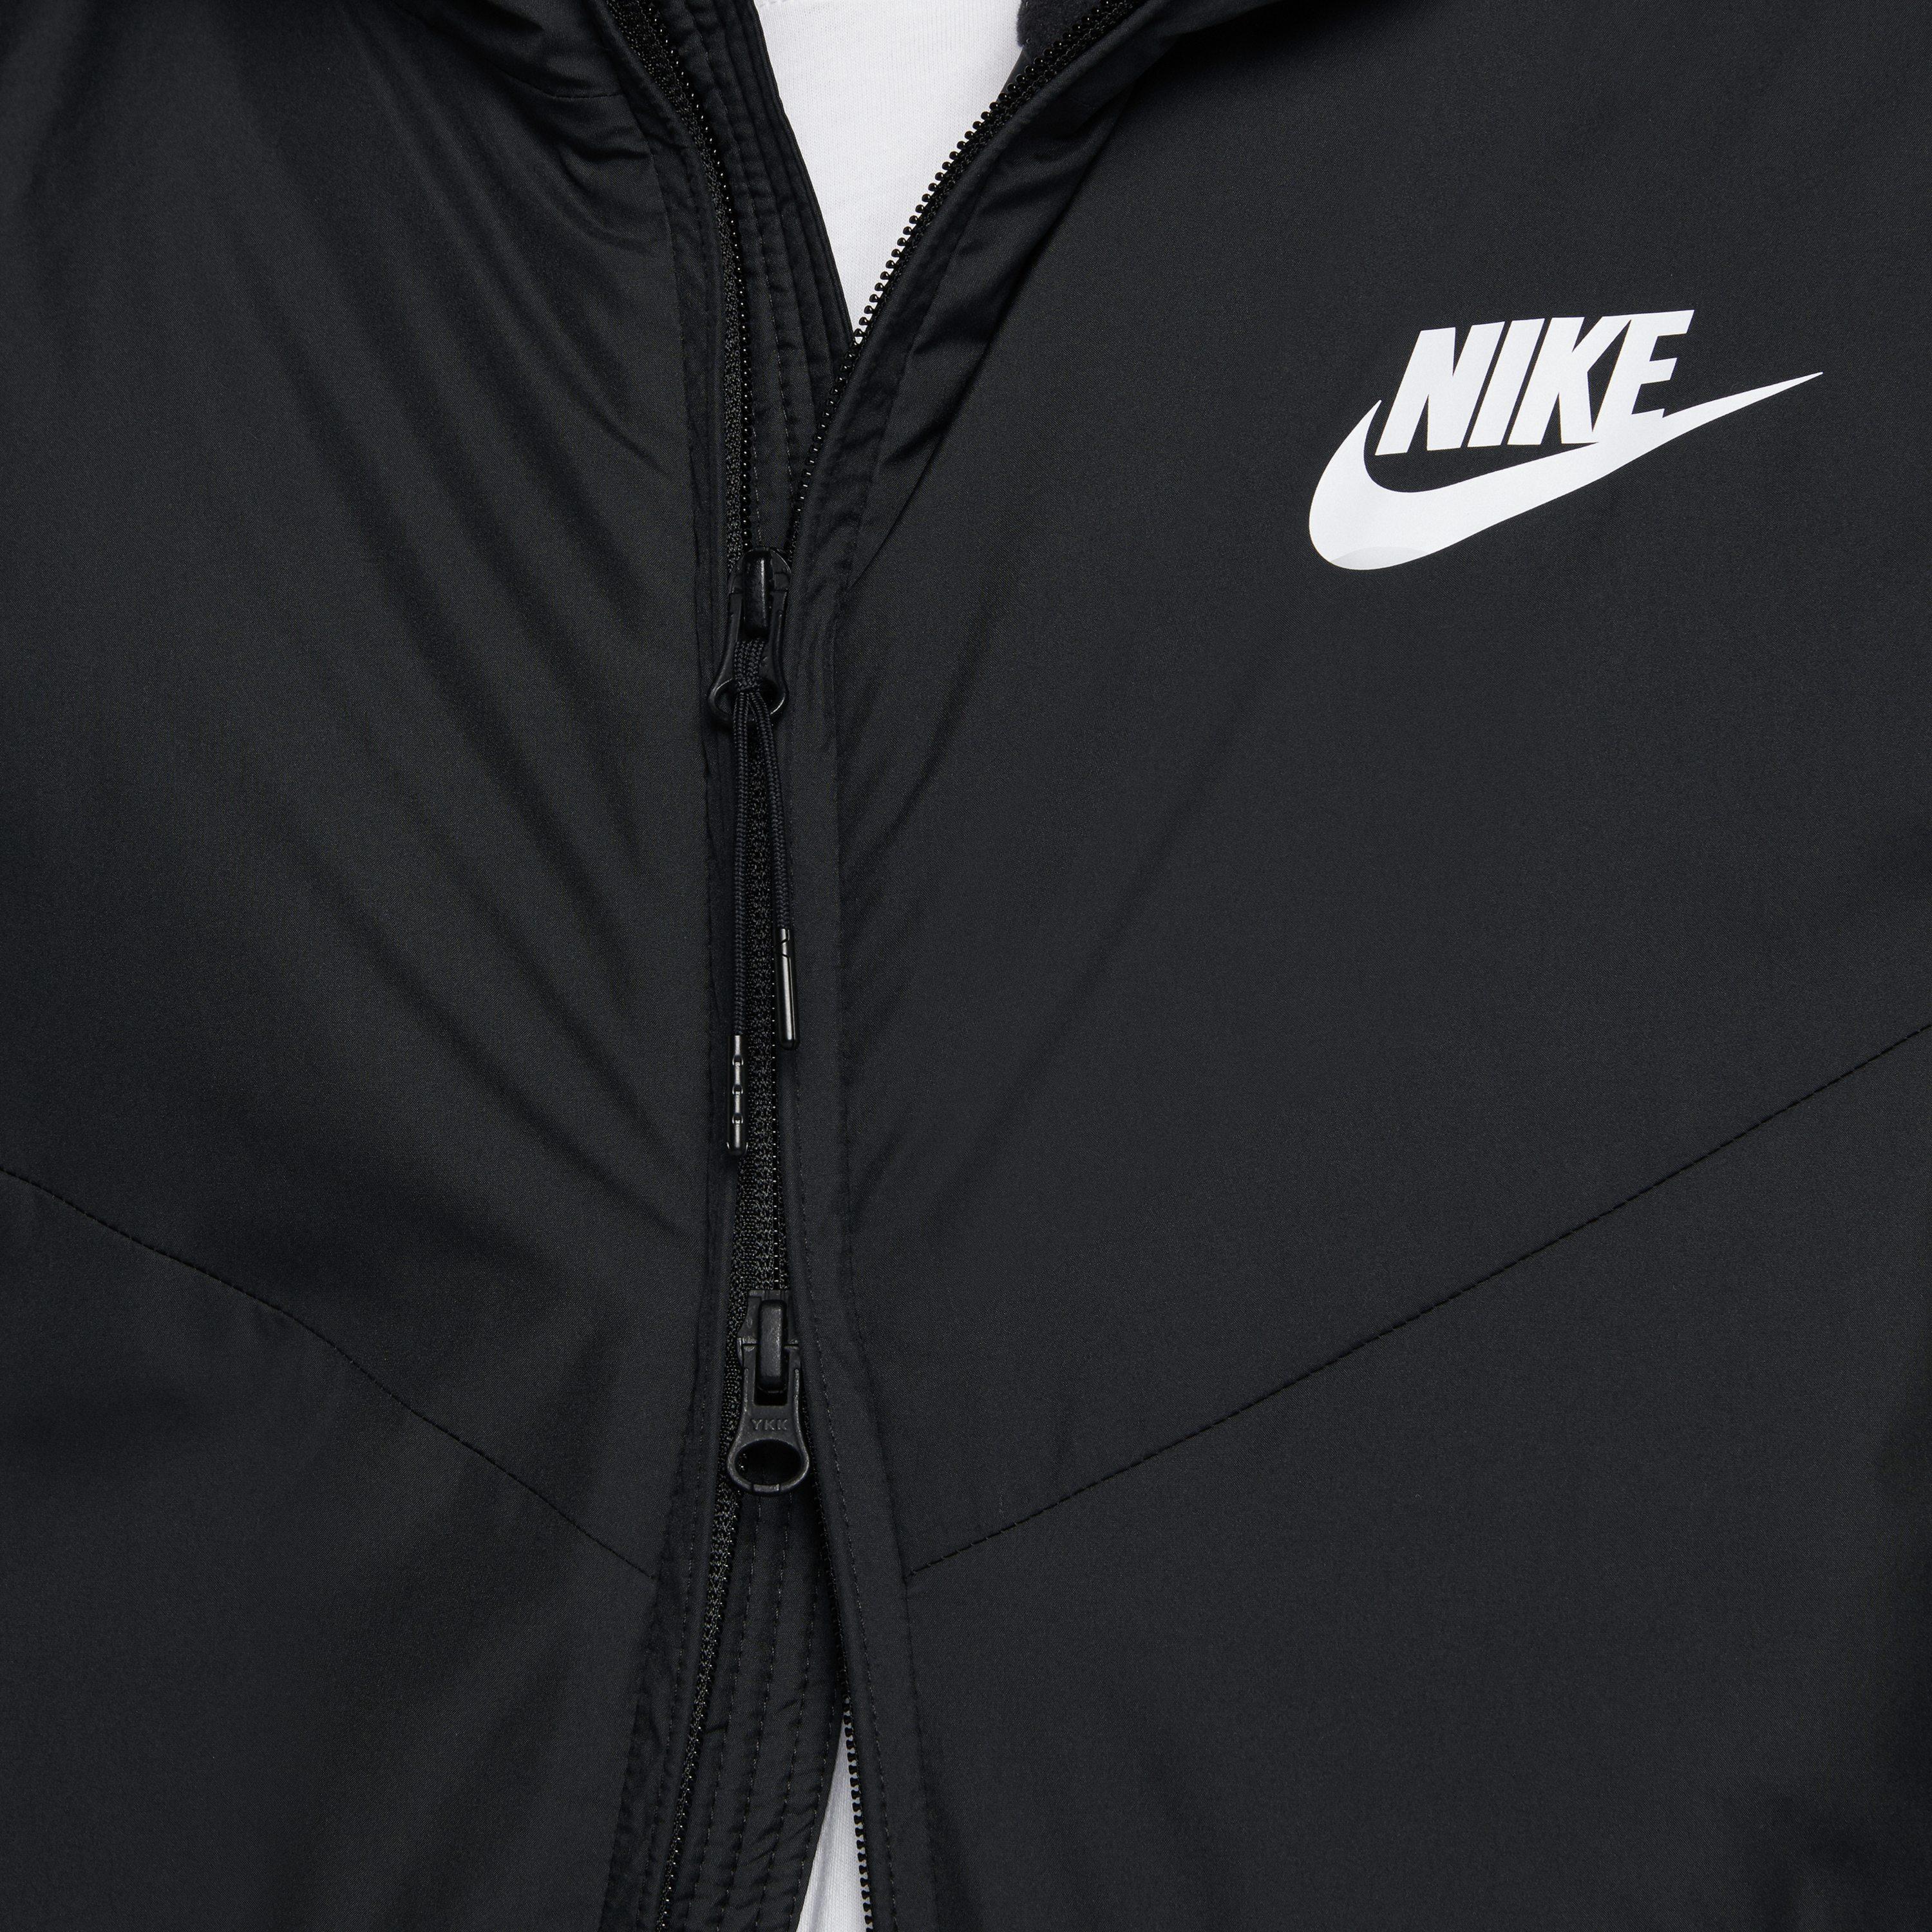 Nike Sportswear Synthetic Fill Hooded Jacket in Black for Men - Lyst